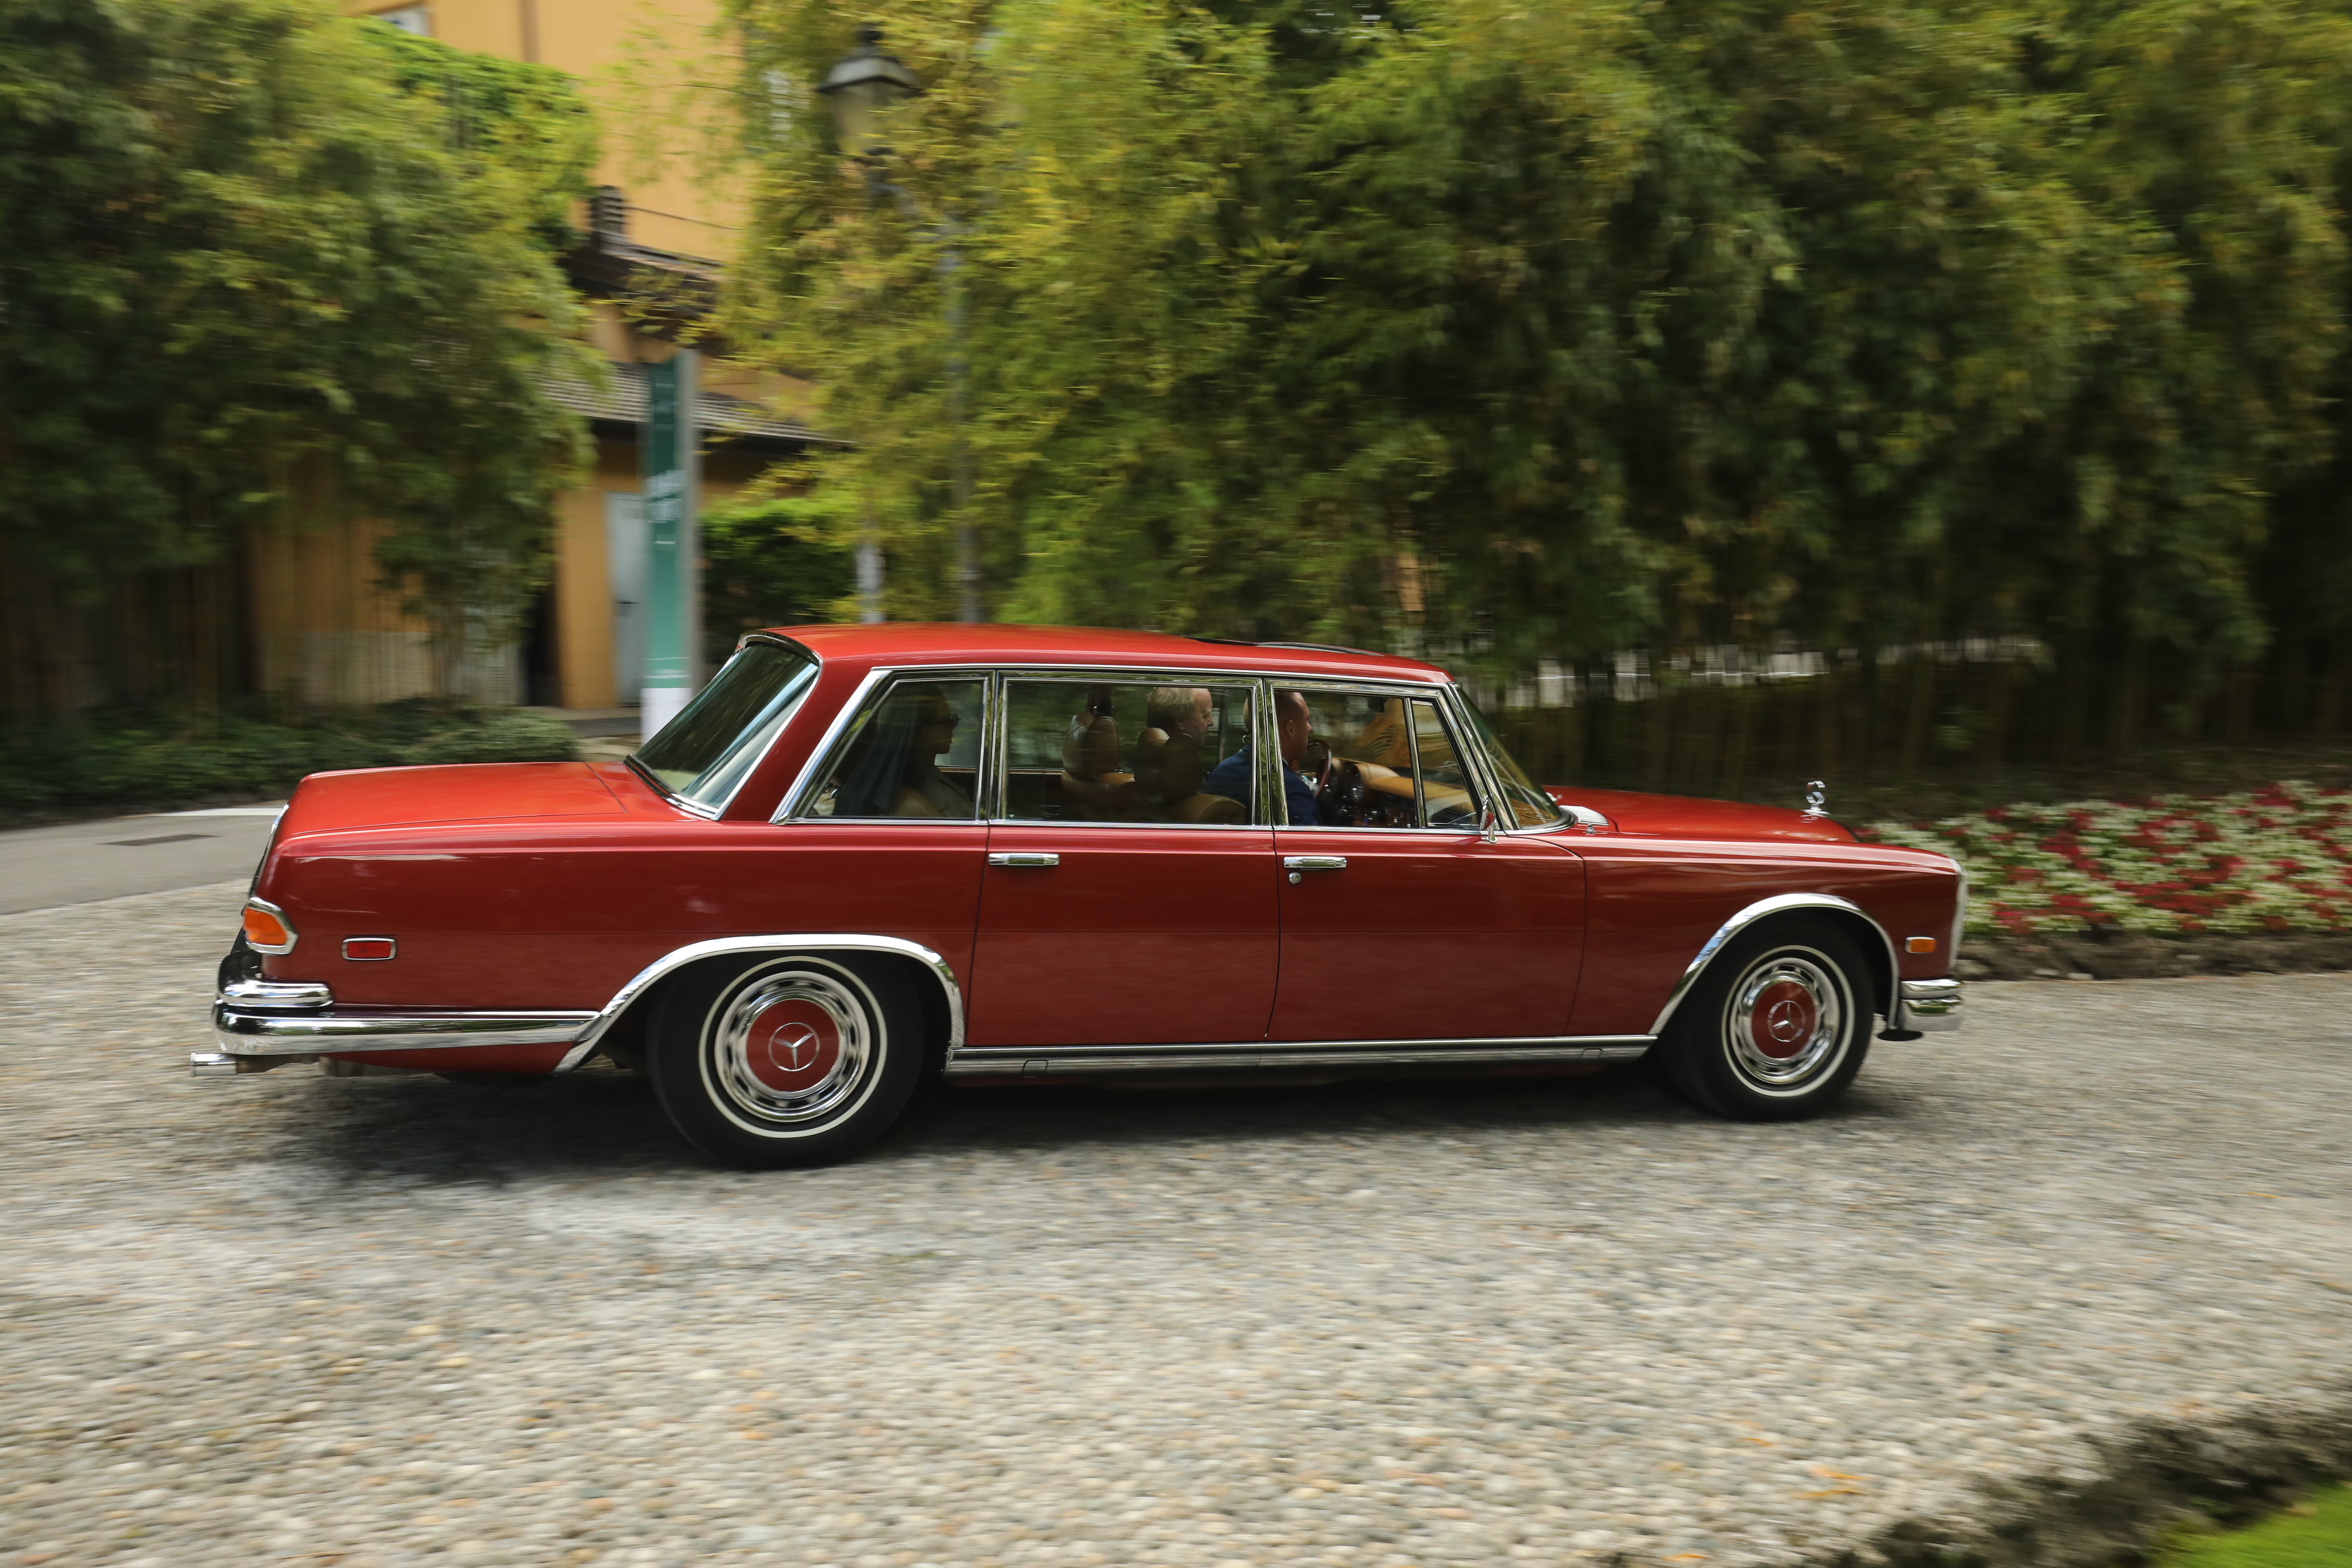 1972 Mercedes-Benz 600 i rød metallic, et dristig - men ytterst kledelig - fargevalg som kun ble levert på to slike biler.